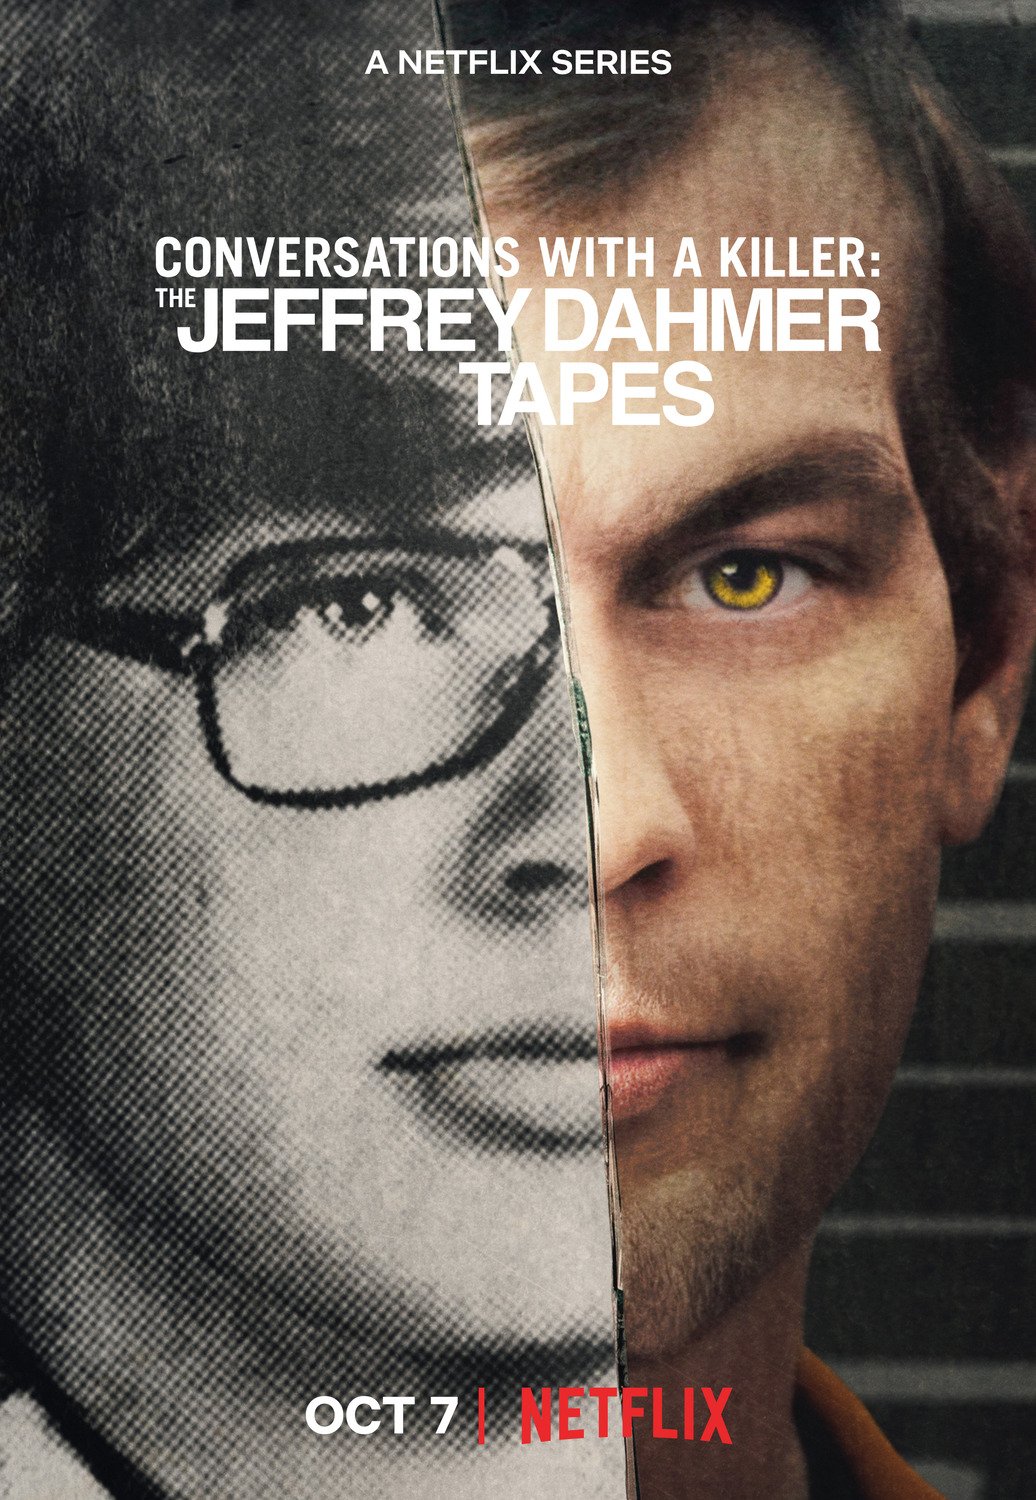 Jeffrey Dahmer : Autoportrait d'un tueur